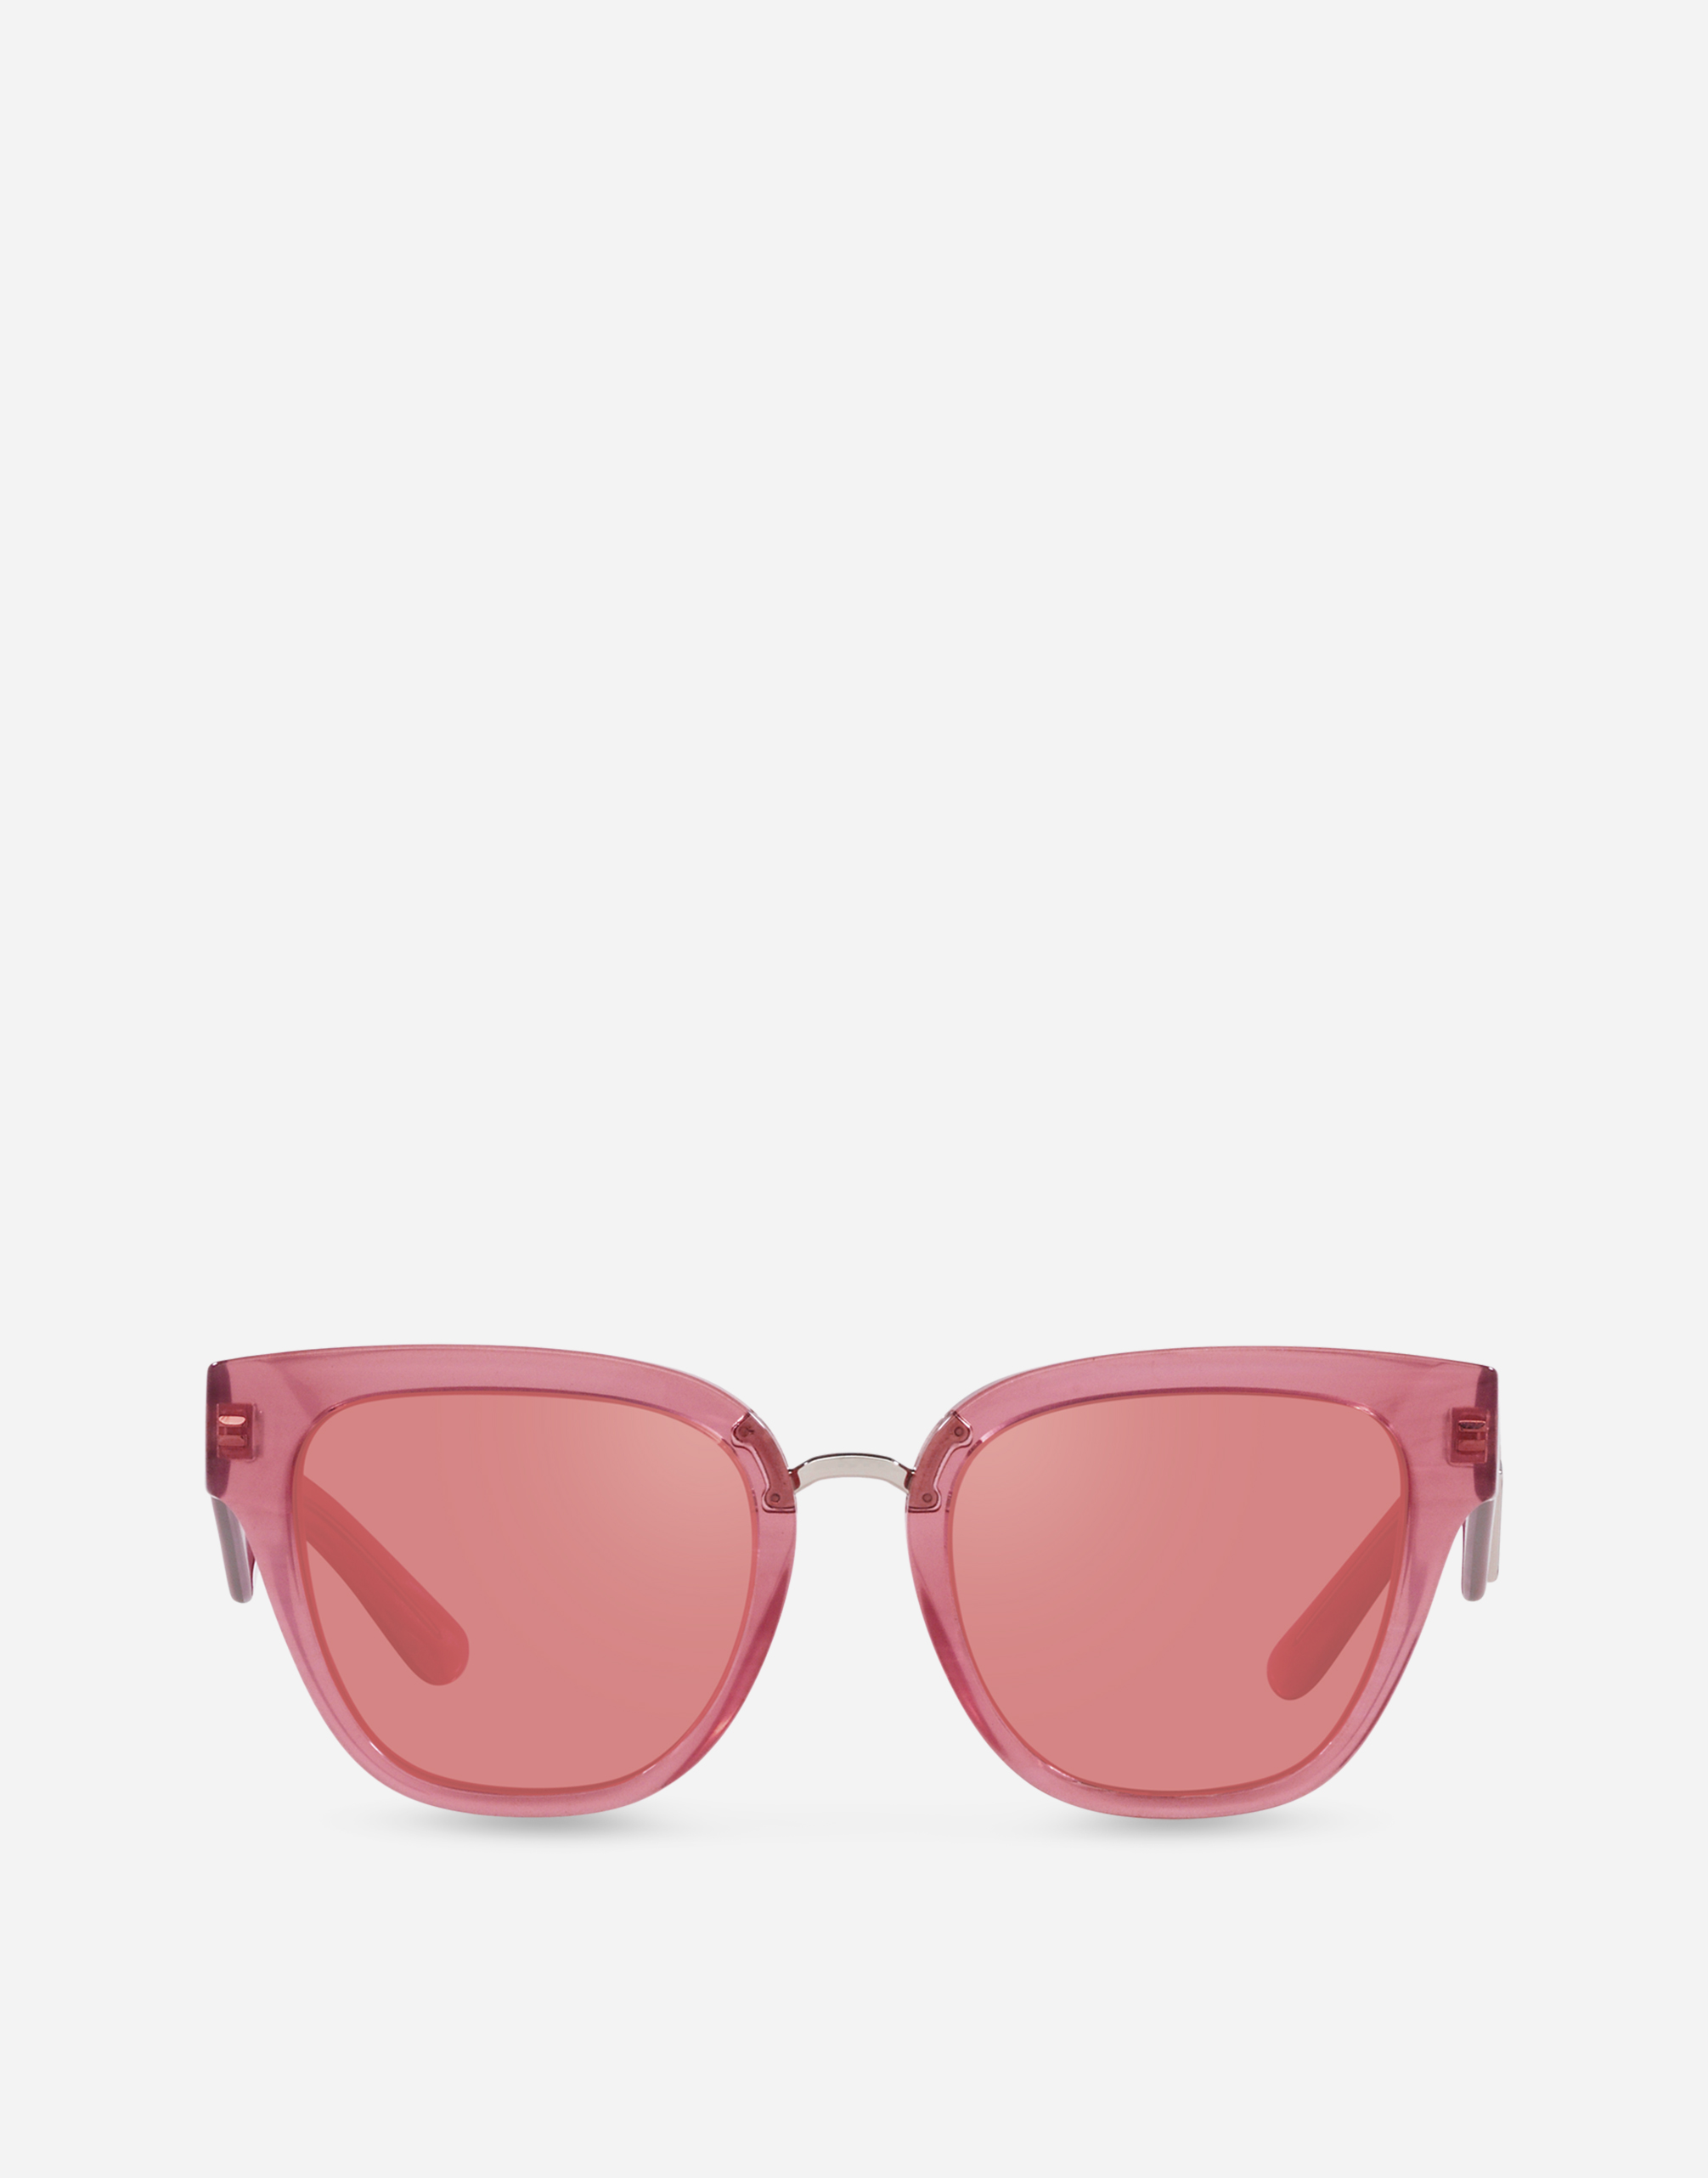 DG Crossed Sunglasses in Fleur pink